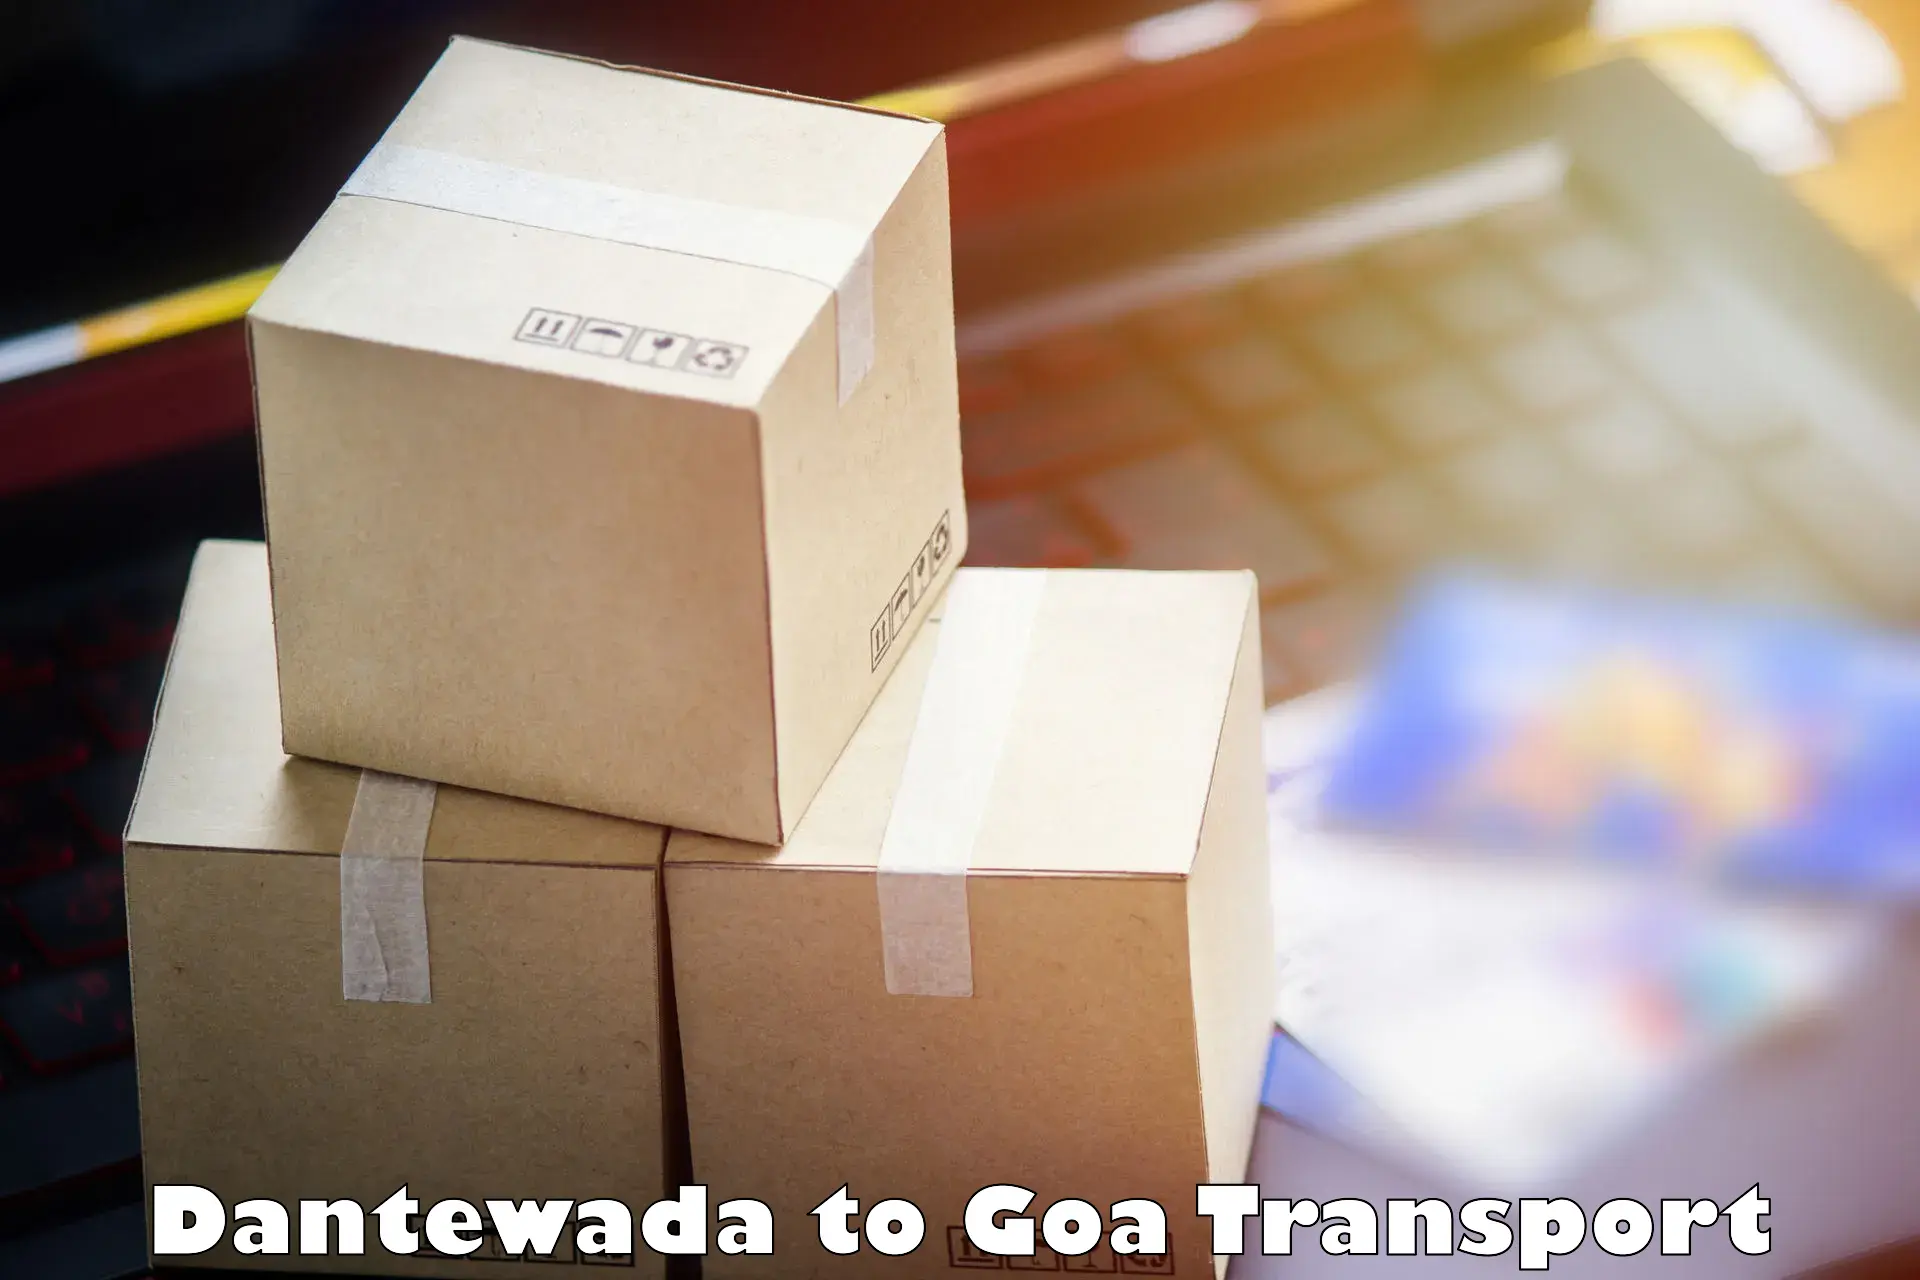 Bike transport service Dantewada to Goa